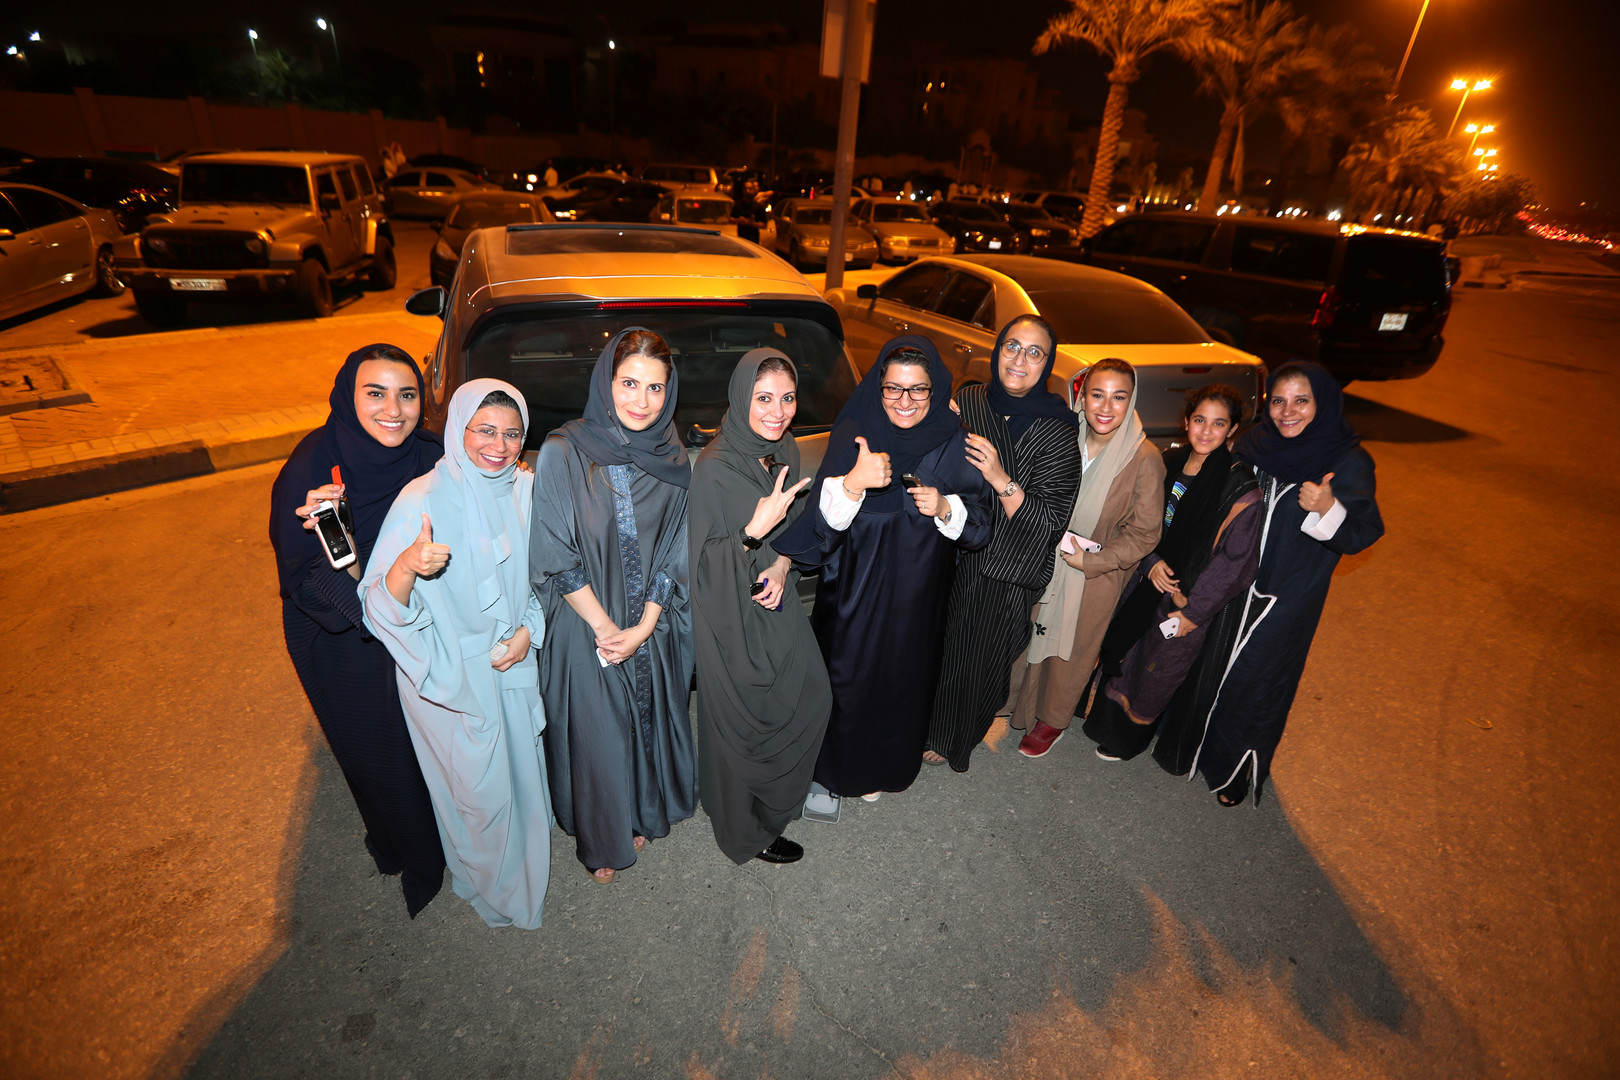 Emues et fières, des Saoudiennes au volant après la levée historique de l'interdiction (IMAGES)